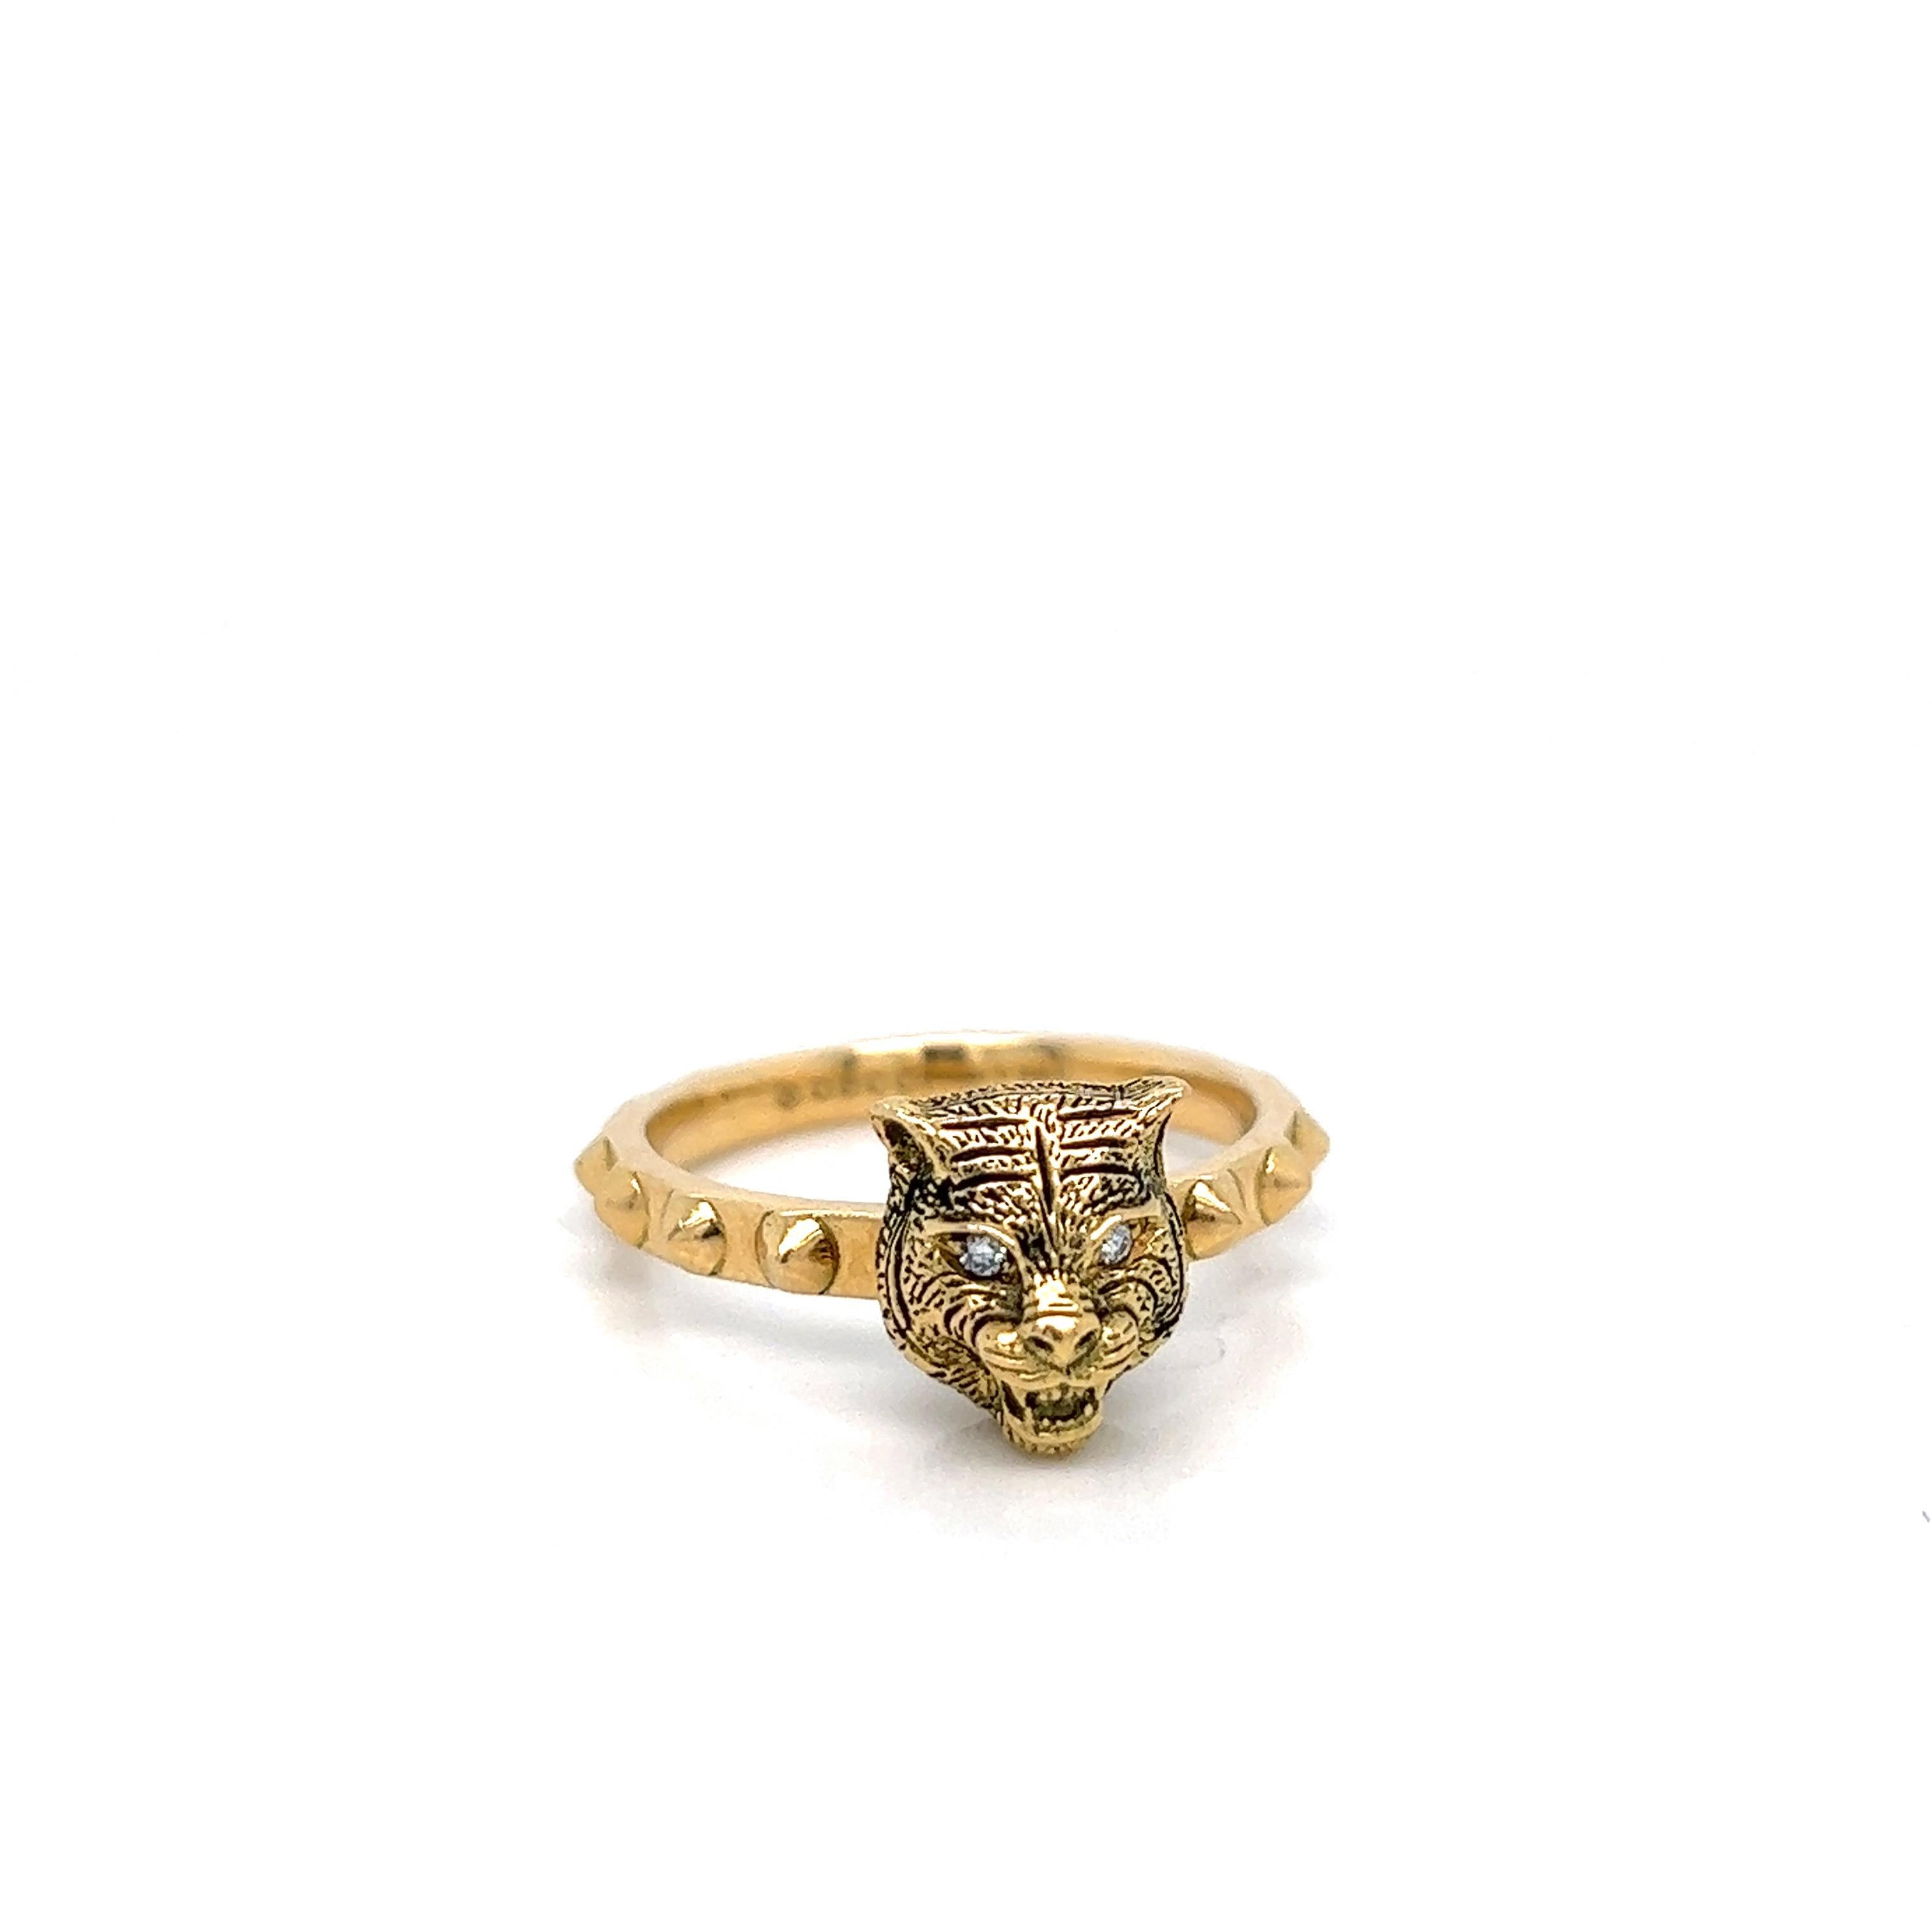 Gucci Ring aus 18 Karat Gelbgold mit Band; markiert Gucci, hergestellt in Italien, Au750, 16

Katzenmotiv für den Kopf mit Augen aus Diamanten im Rundschliff von 0,20 Karat

Größe: 7.5-7.75 
Gesamtgewicht: 7,3 Gramm